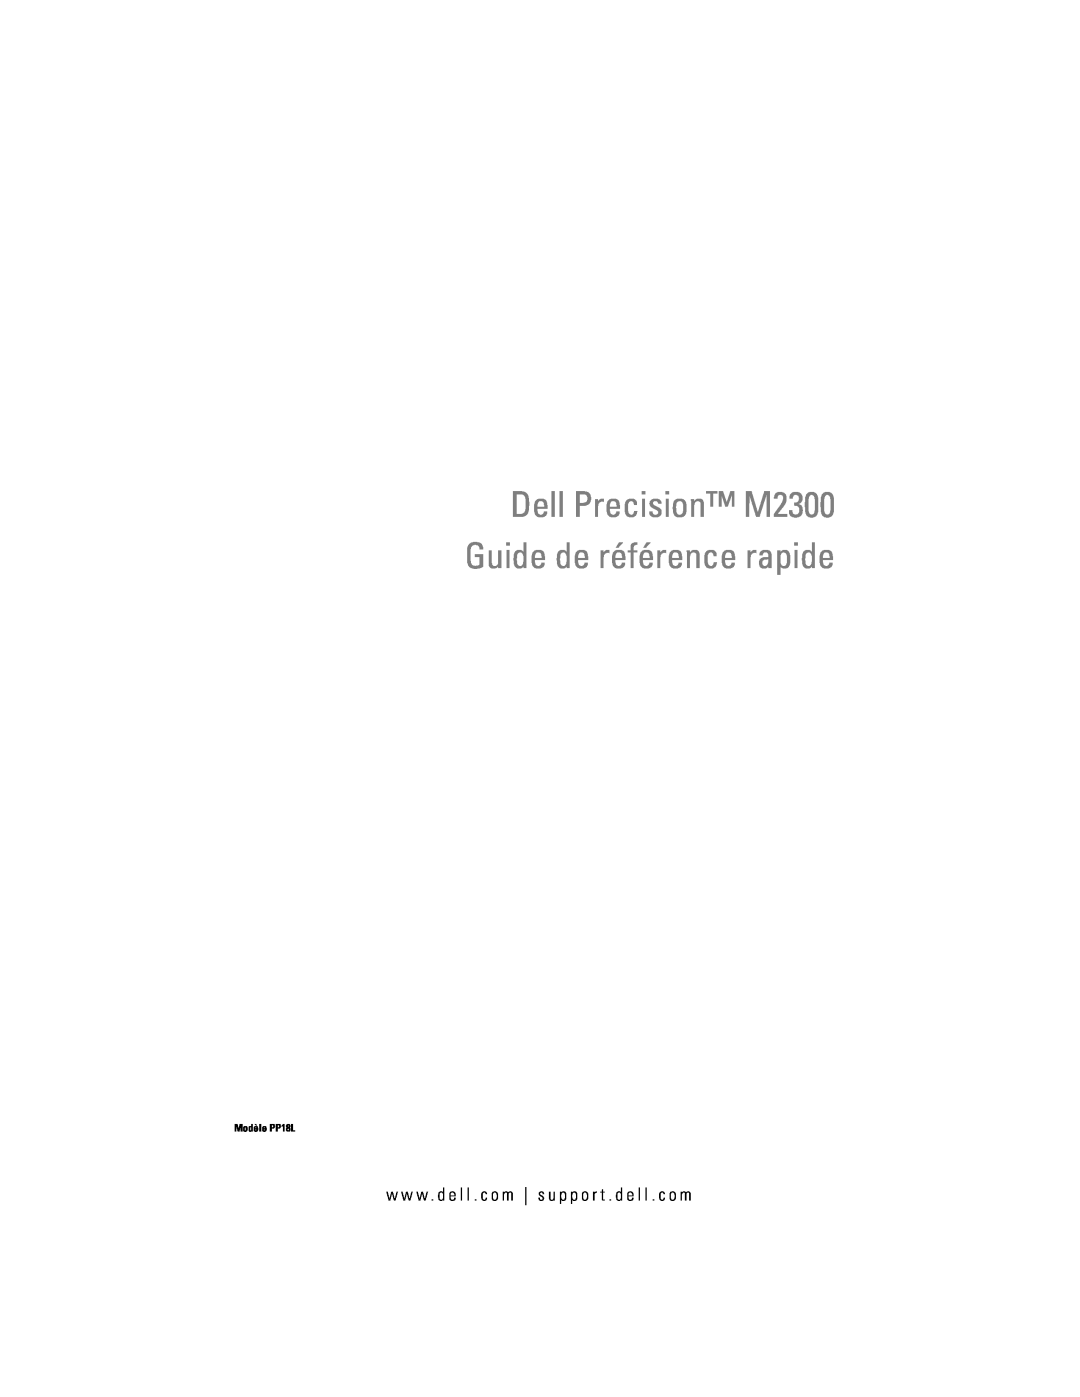 Dell manual Dell Precision M2300 Guide de référence rapide, Modèle PP18L 